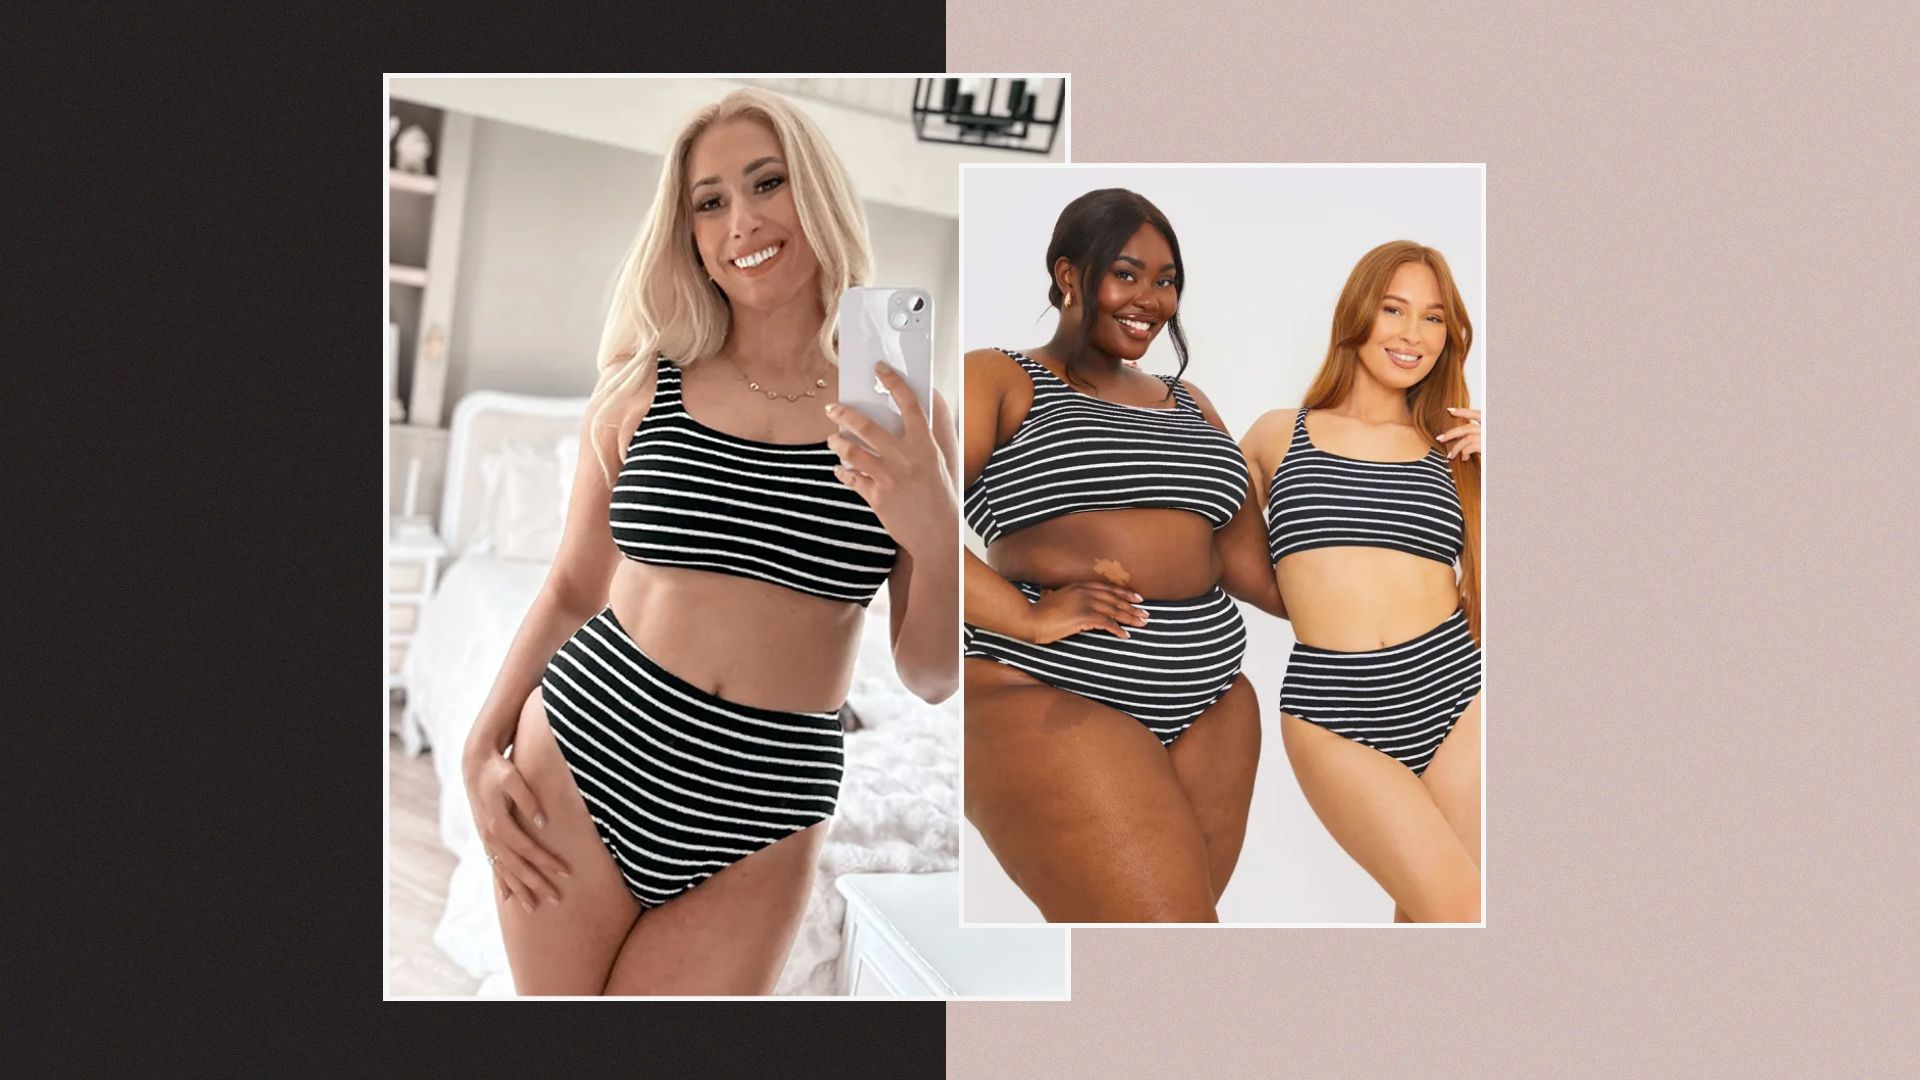 stacey solomon and models in striped bikini split image